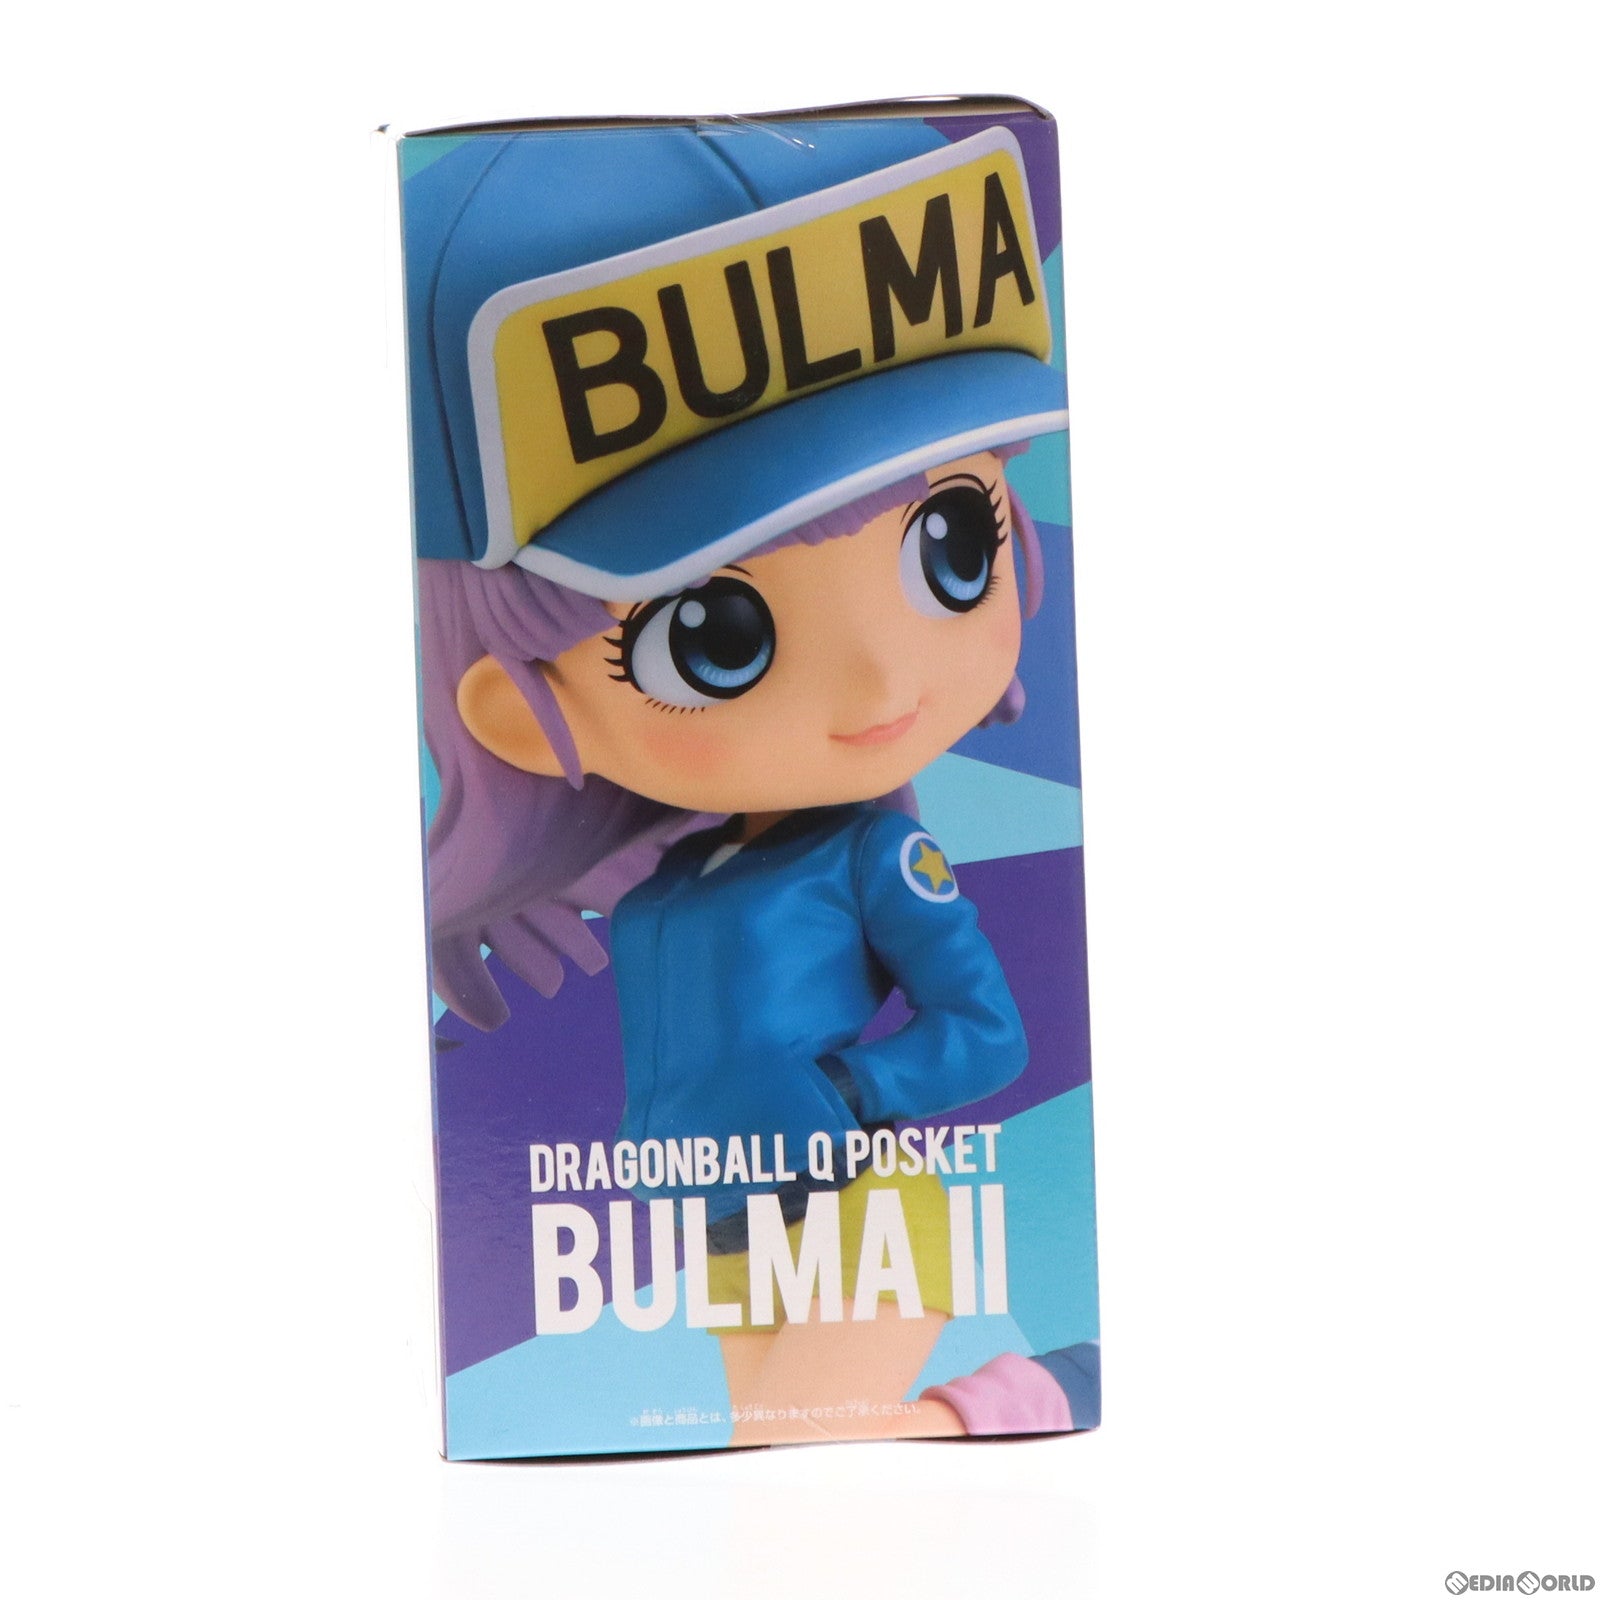 【中古即納】[FIG]ブルマ B(ブルー) ドラゴンボール Q posket-BULMA-II フィギュア プライズ(2496300) バンプレスト(20210731)